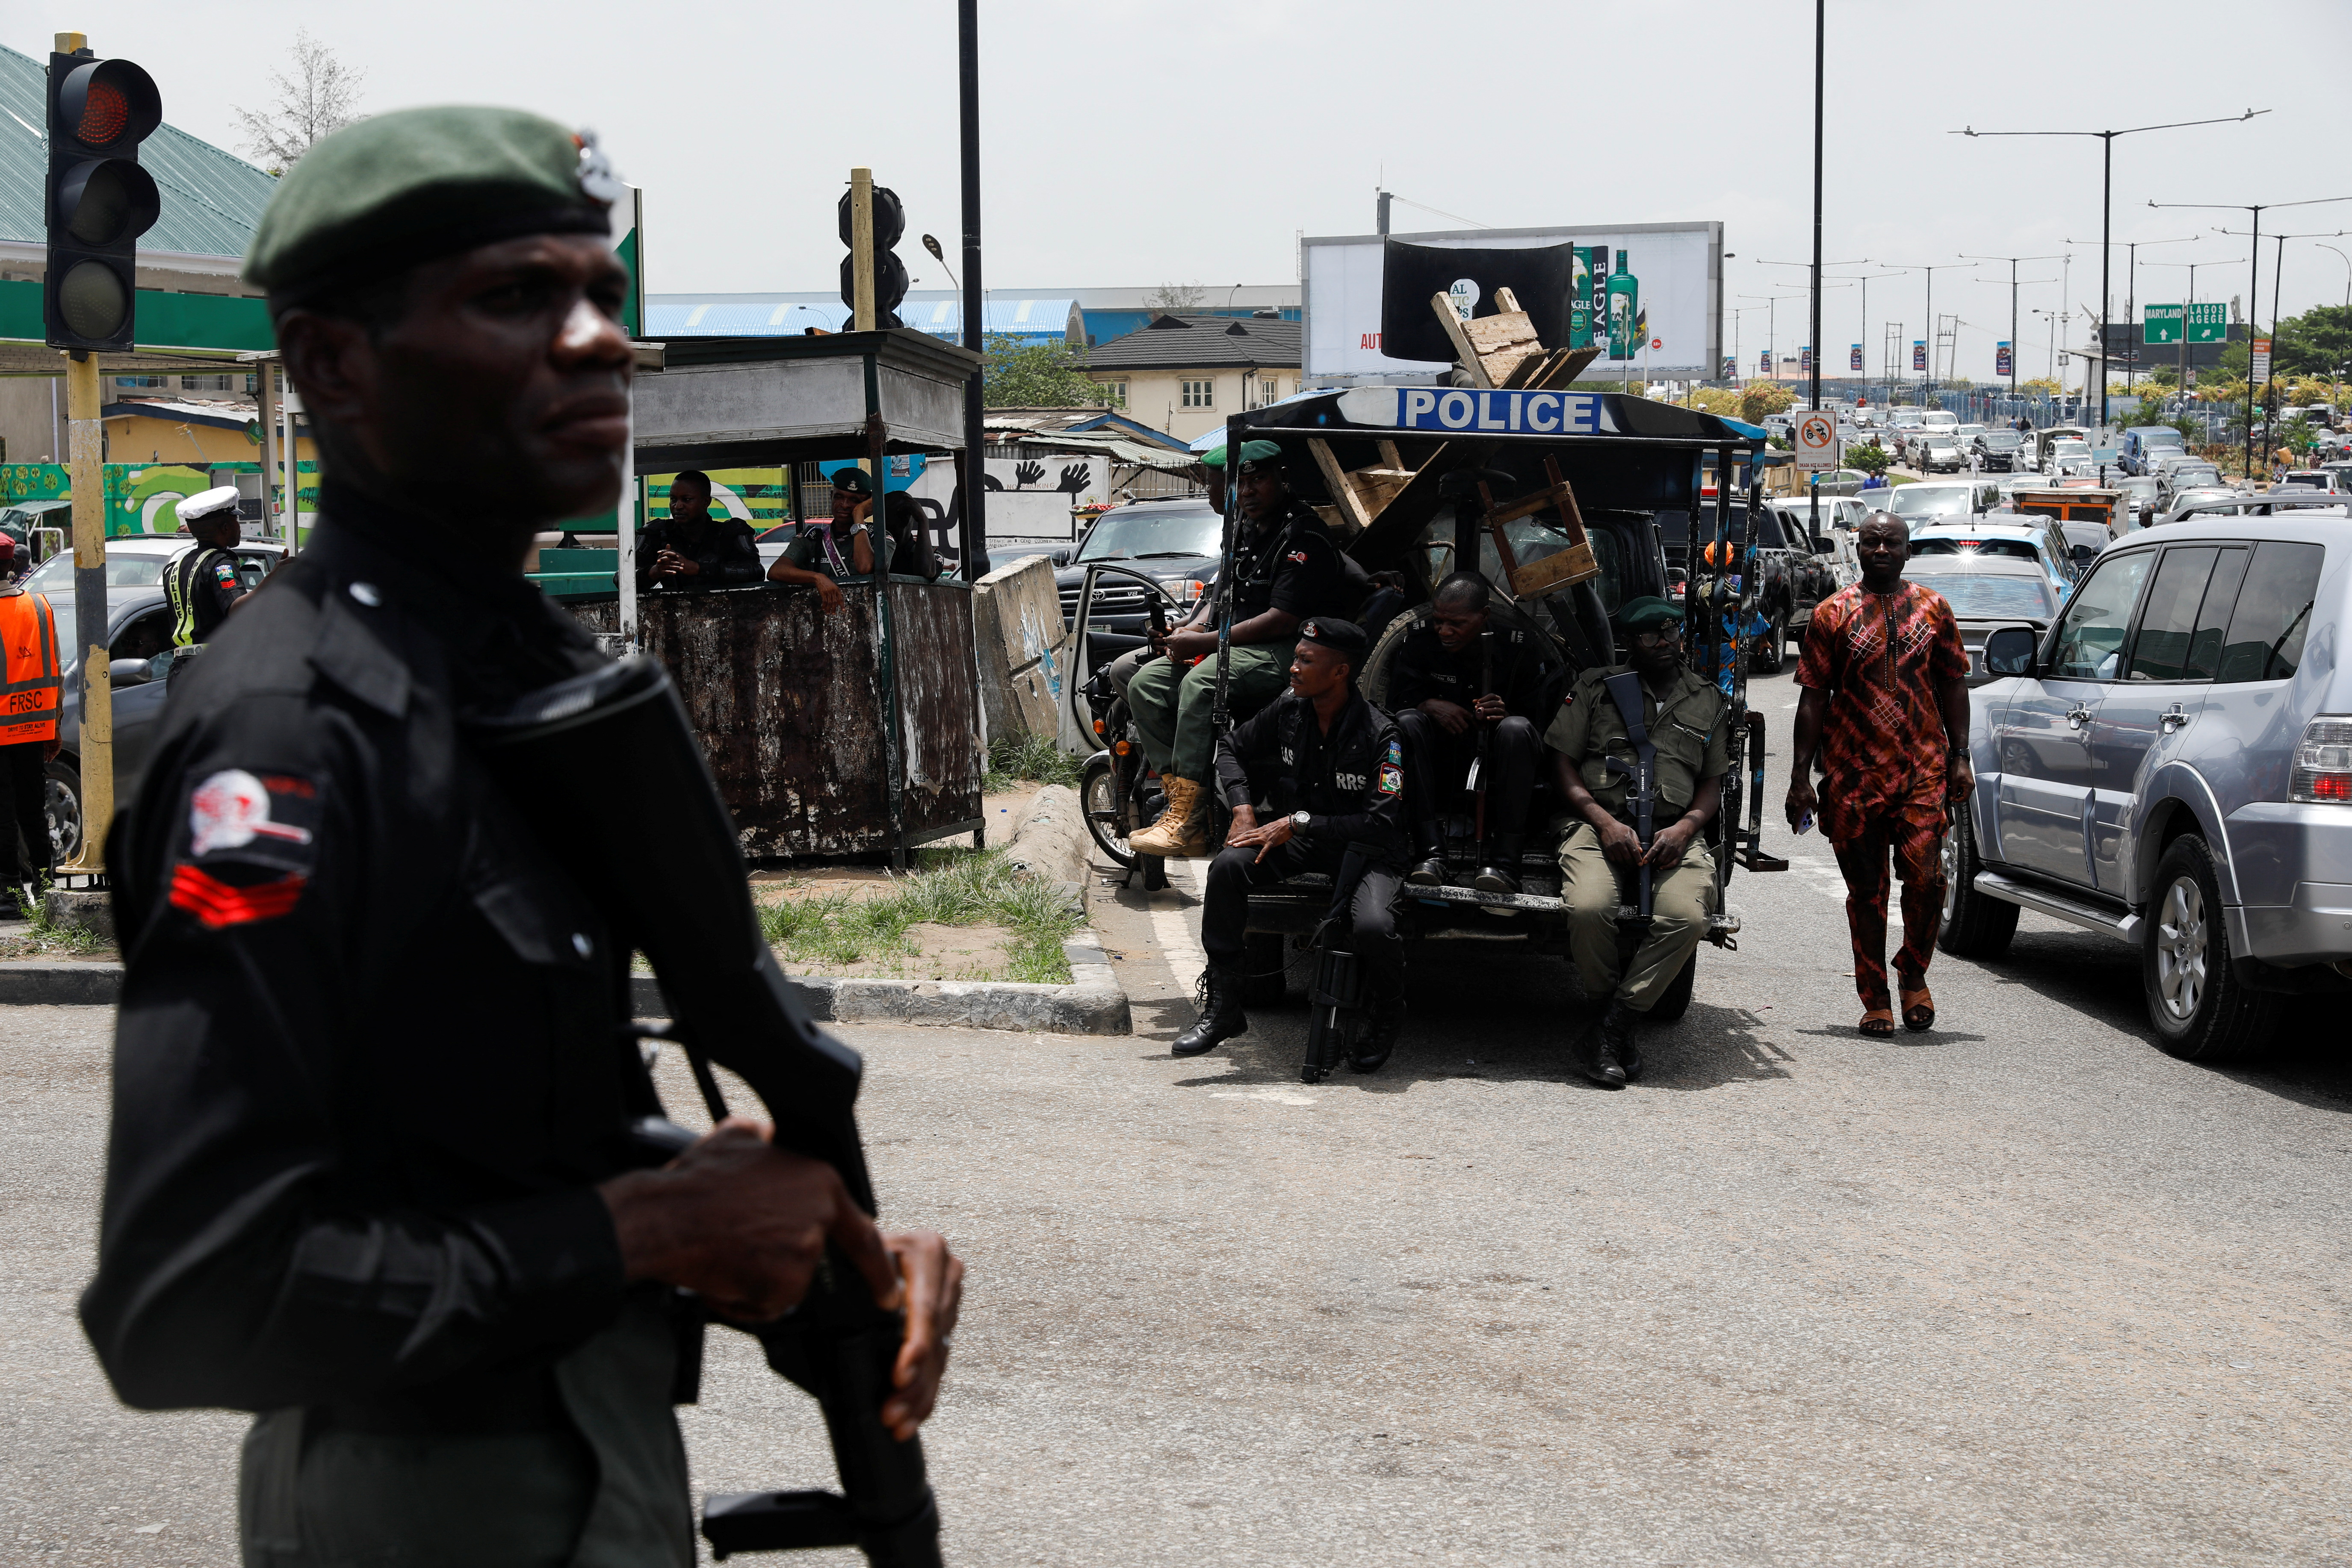 Atacaron un convoy de un consulado de Estados Unidos en Nigeria: cuatro muertos